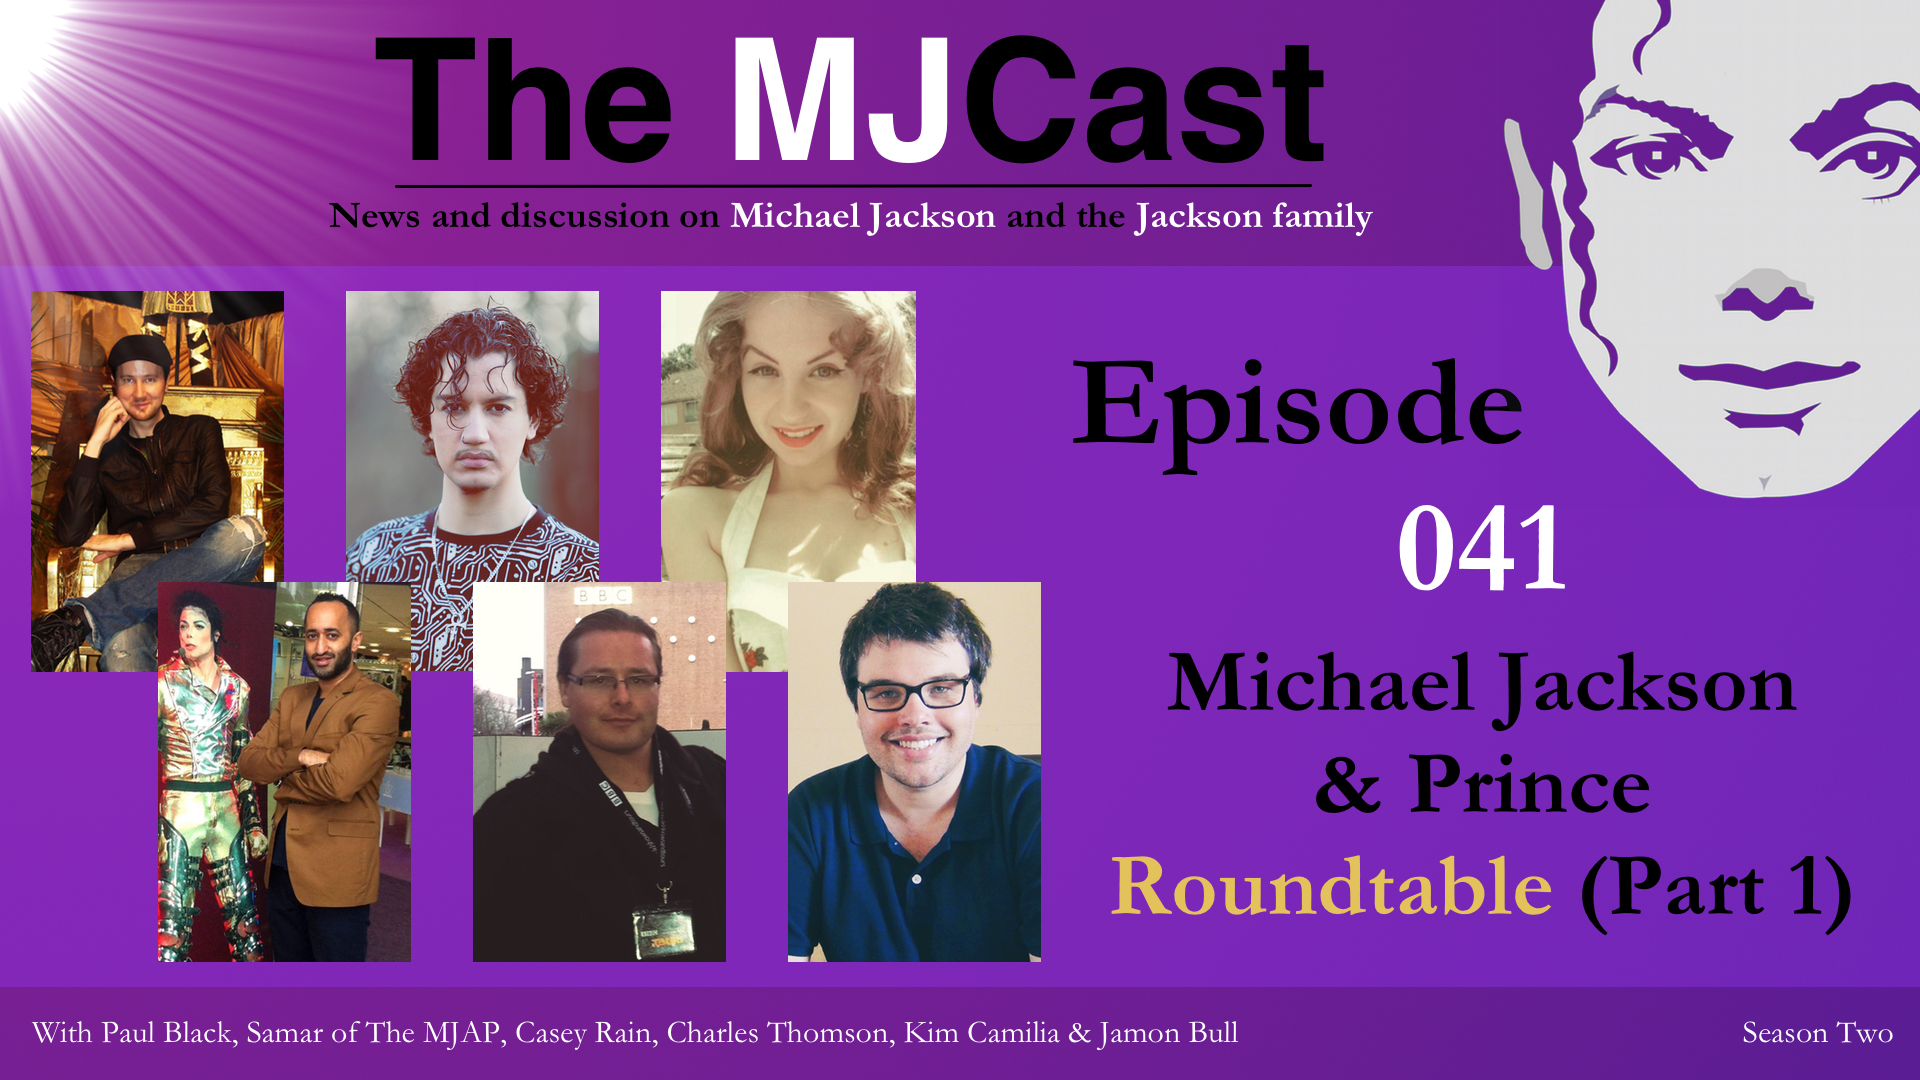 episode-041-michael-jackson-prince-roundtable-part-1-show-art